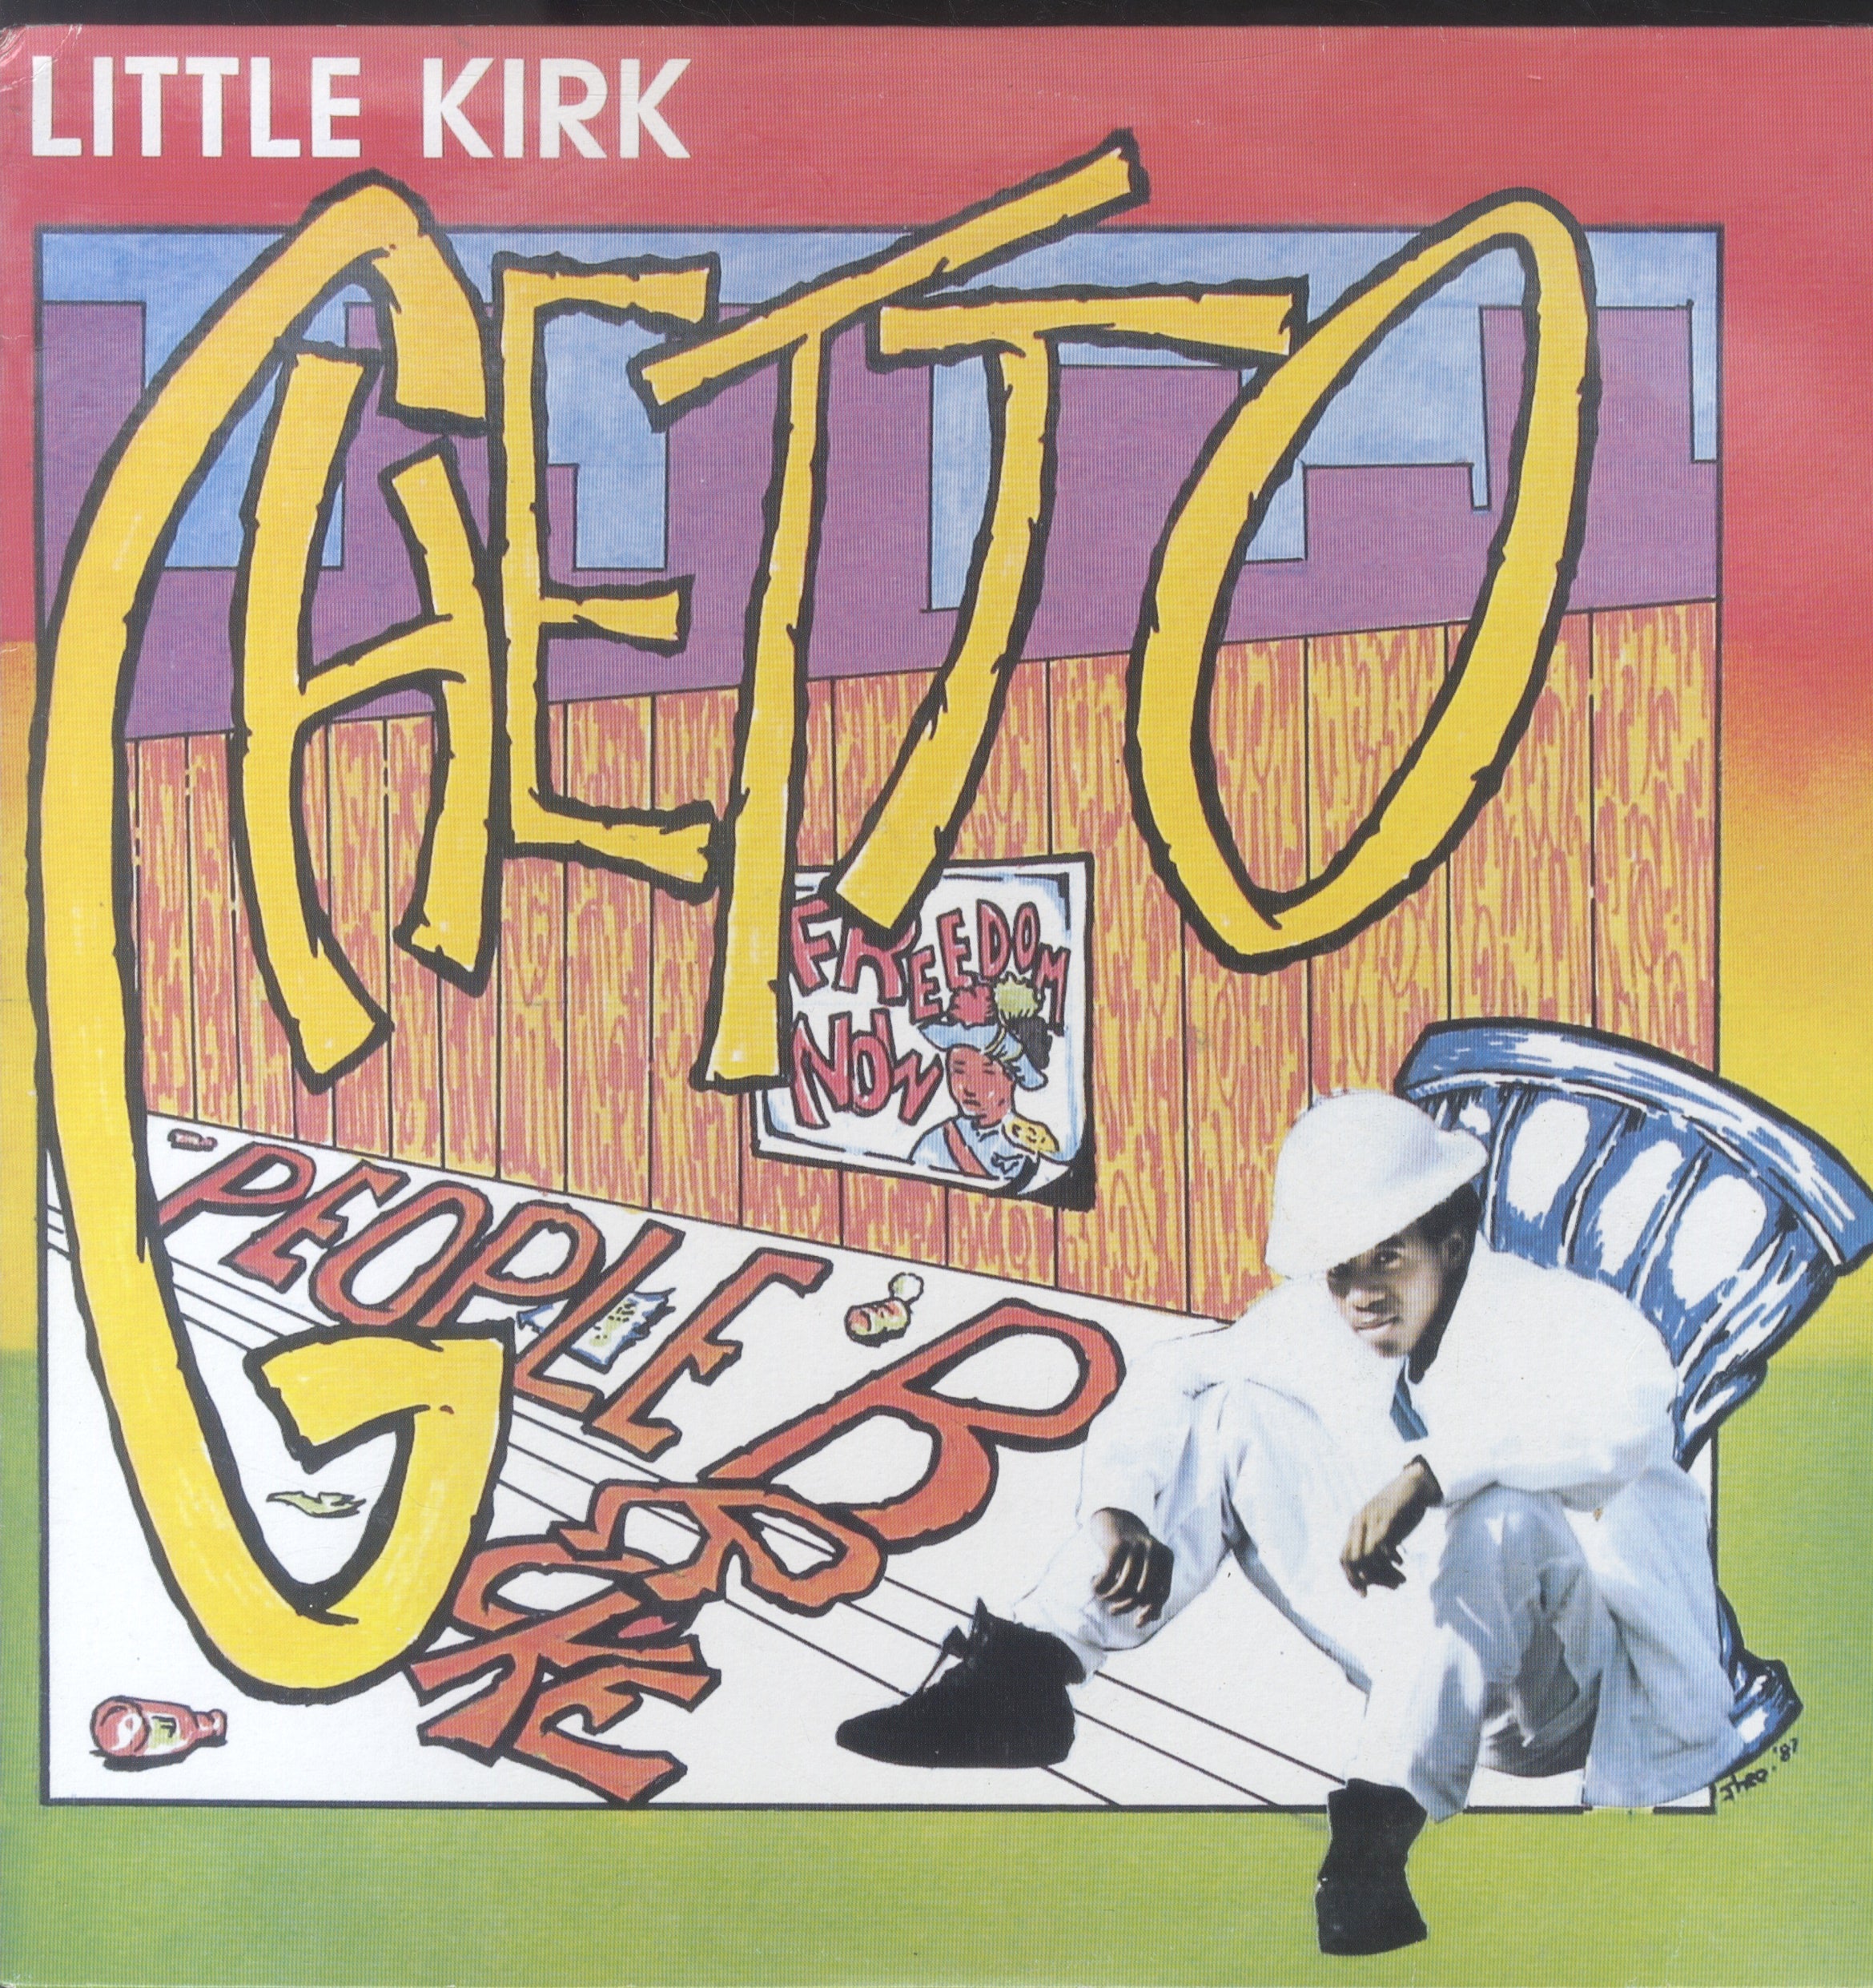 LITTLE KIRK [Ghetto People Broke]